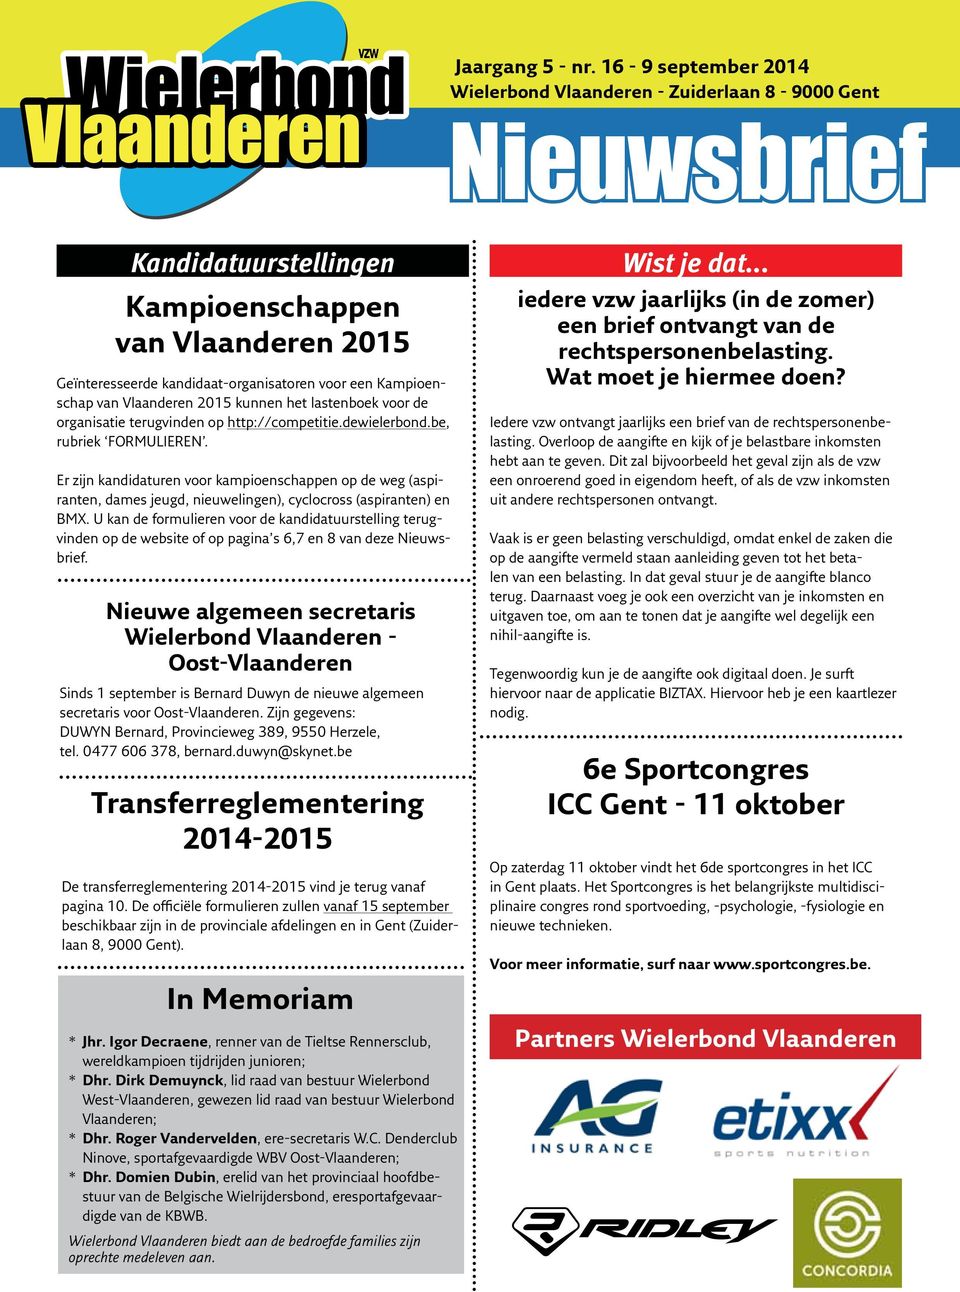 Kampioenschap van Vlaanderen 2015 kunnen het lastenboek voor de organisatie terugvinden op http://competitie.dewielerbond.be, rubriek FORMULIEREN.